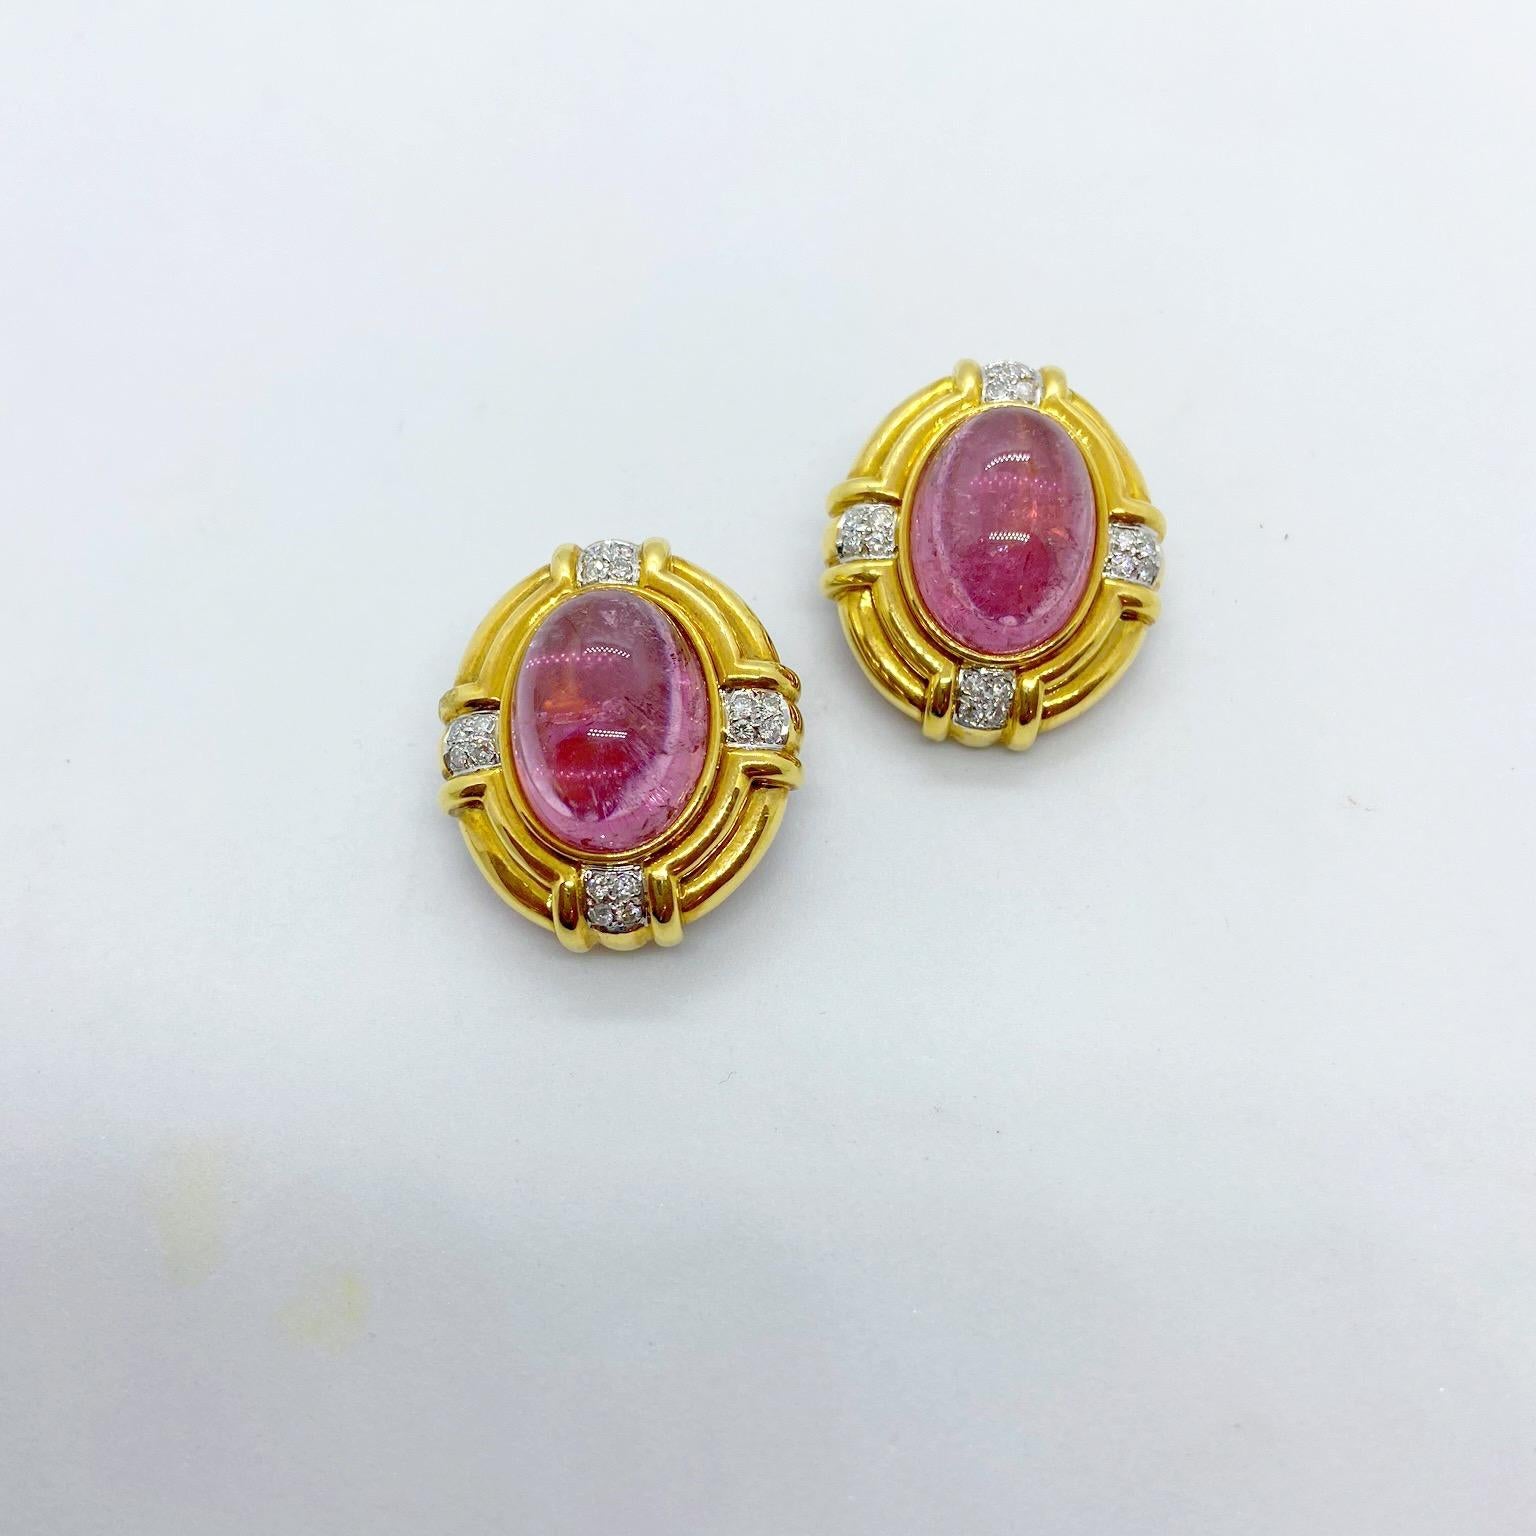 Klassische Ohrringe aus 18 Karat Gelbgold mit ovalen rosafarbenen Turmalinen im Cabochon und runden Brillanten. Die Ohrringe messen ungefähr 1